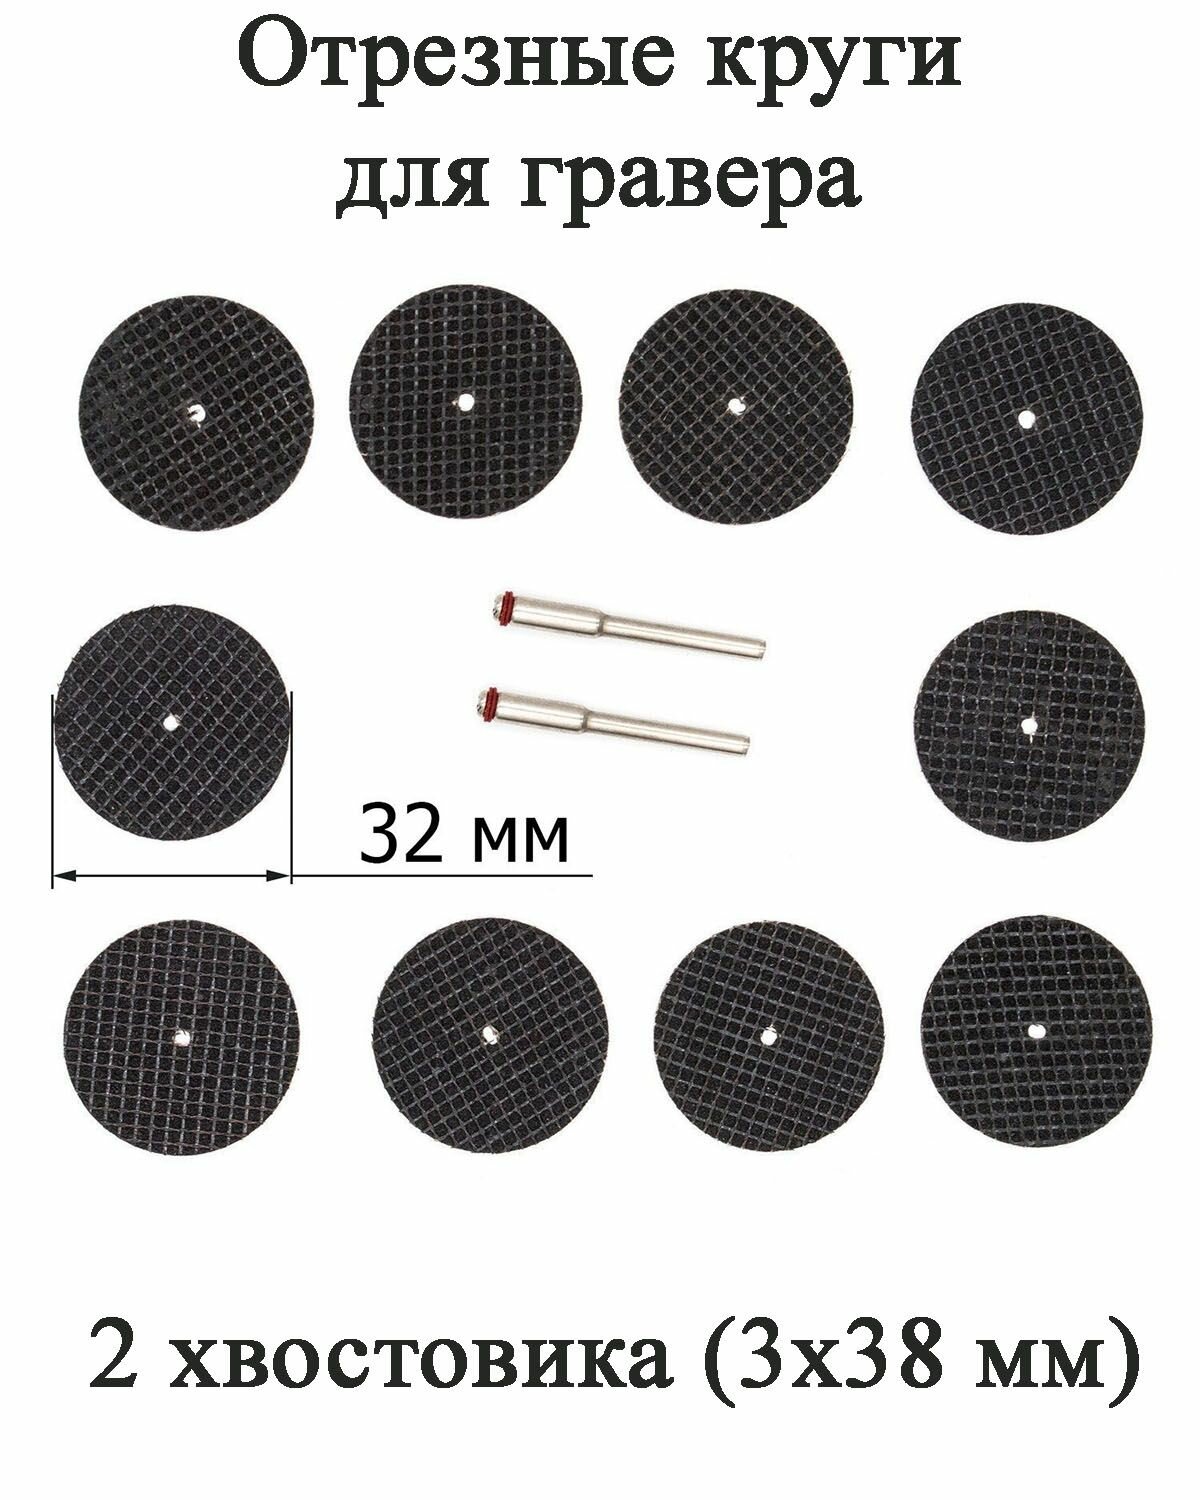 Набор из 10 отрезных армированных дисков для гравера диаметром 32 мм, хвостовик 3х38 мм